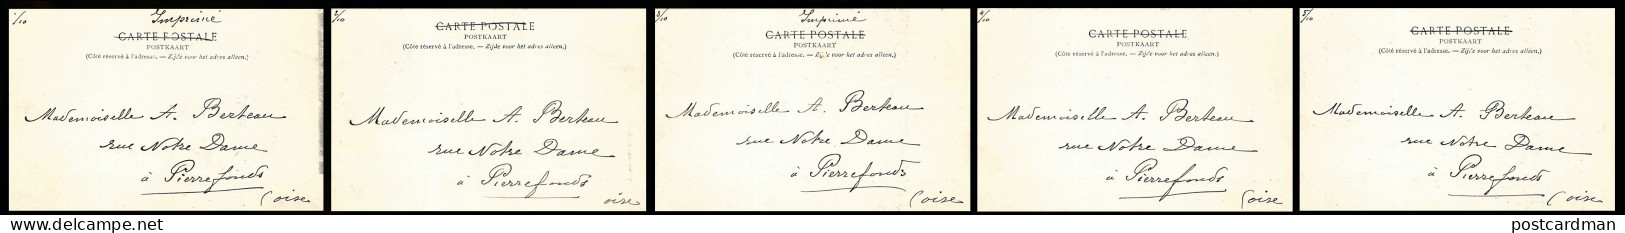 BRUXELLES - 75ème anniversaire de l'Indépendance - Grand Cortège Historique - Série de 30 cartes postales - Ed. Lagaert